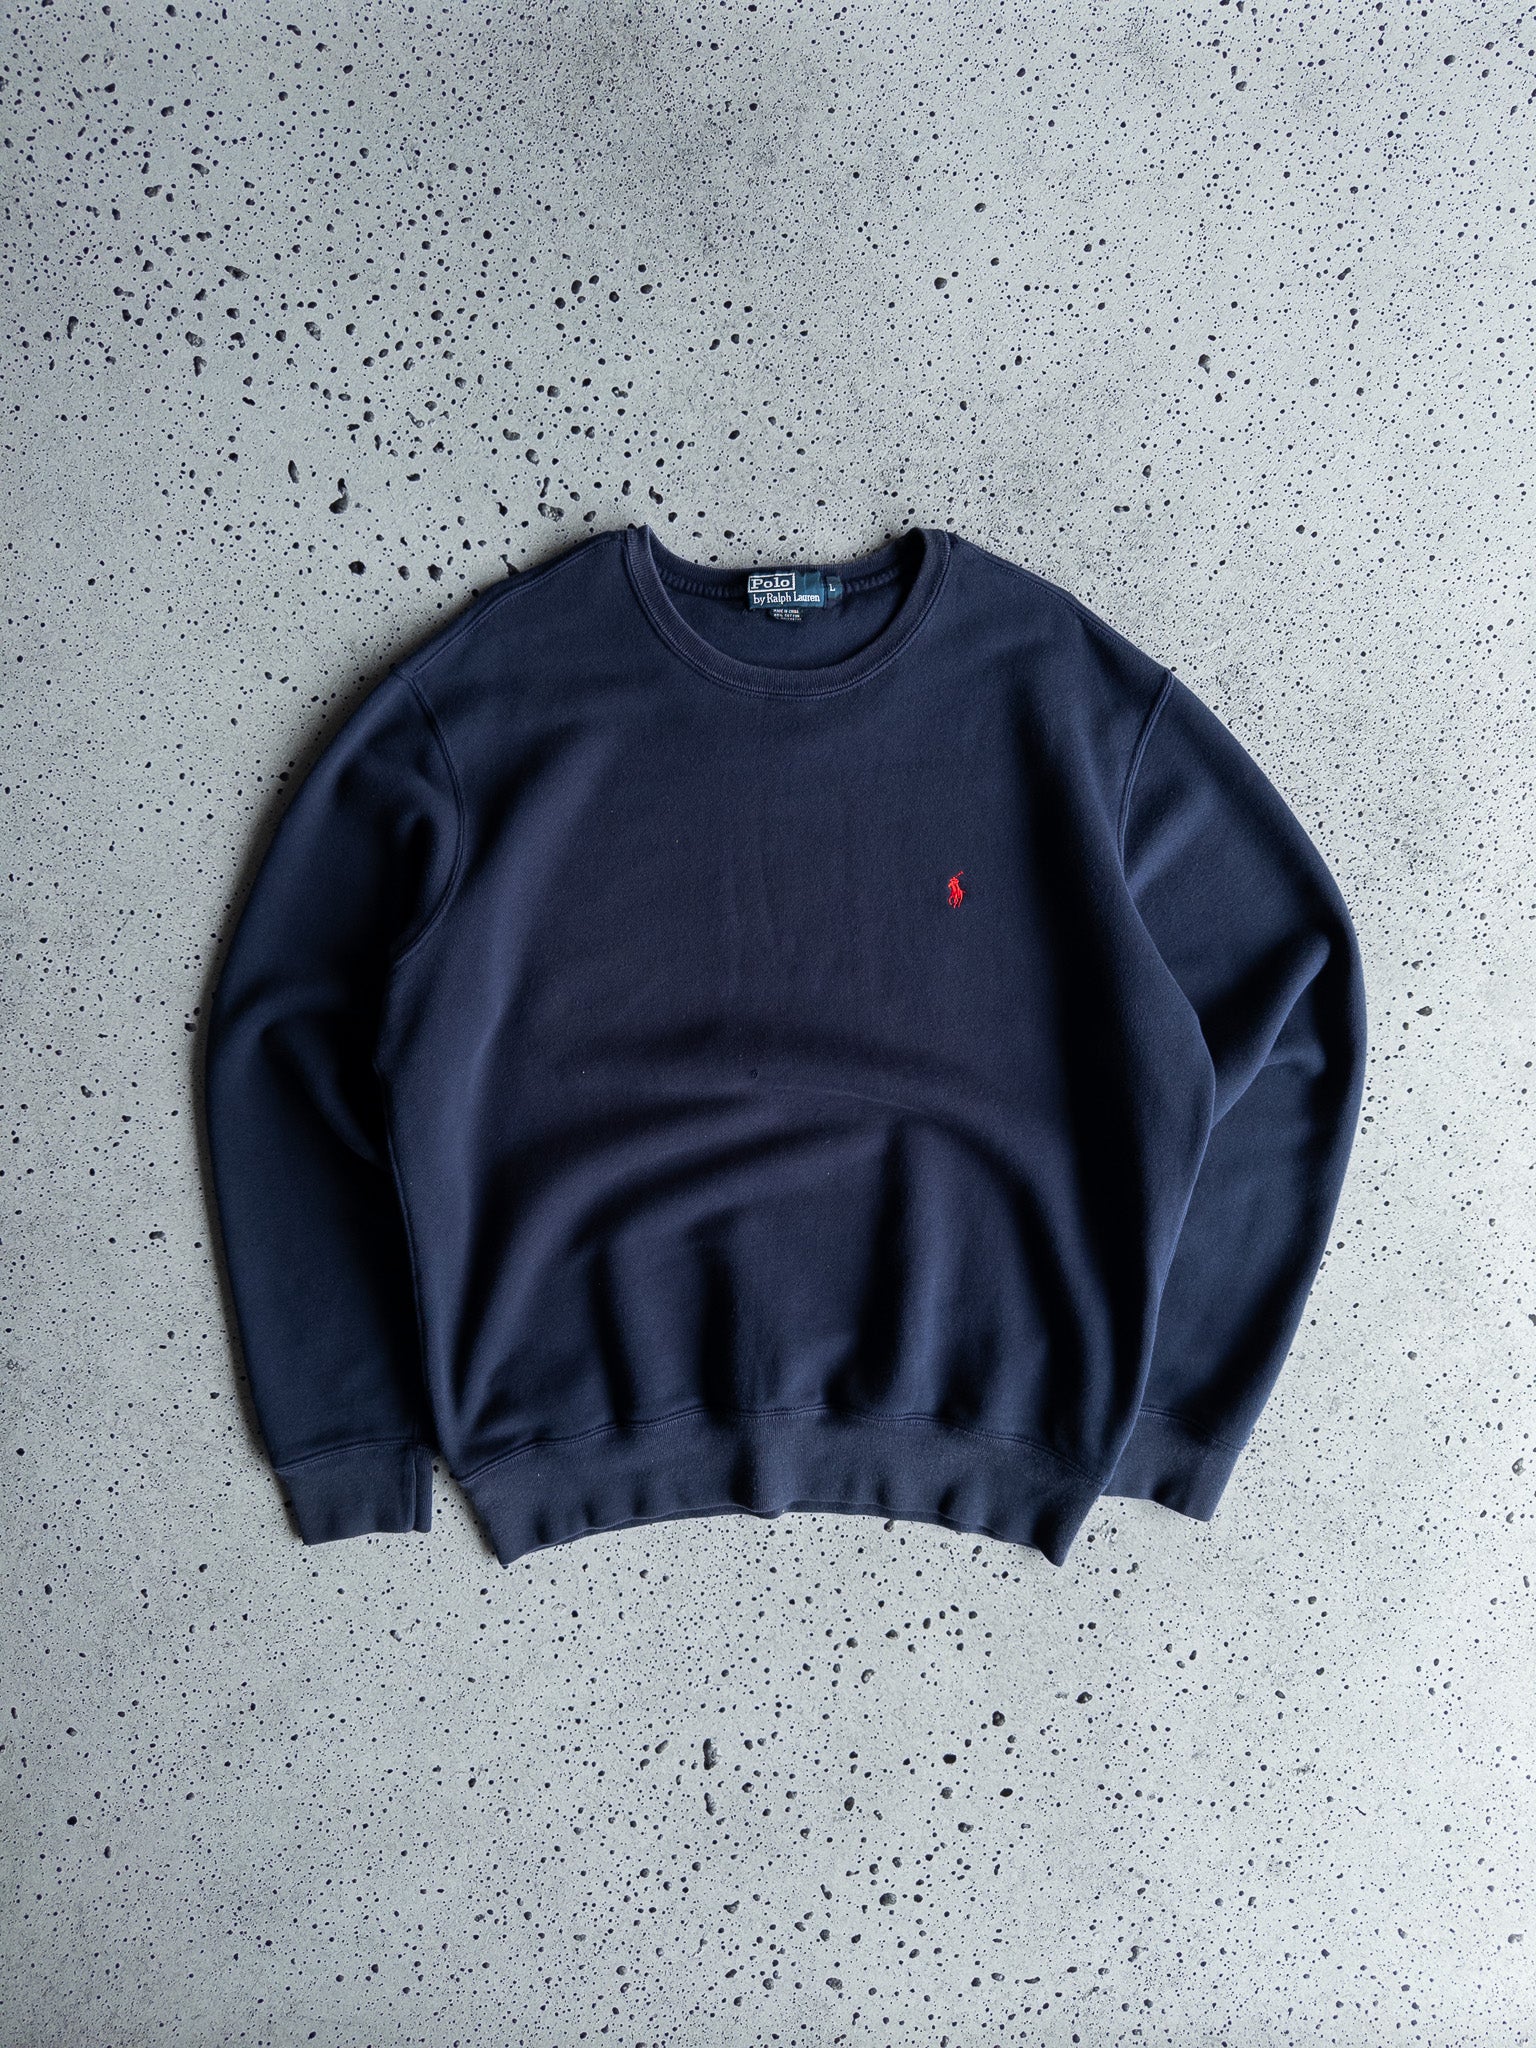 Vintage Ralph Lauren Sweatshirt (L)